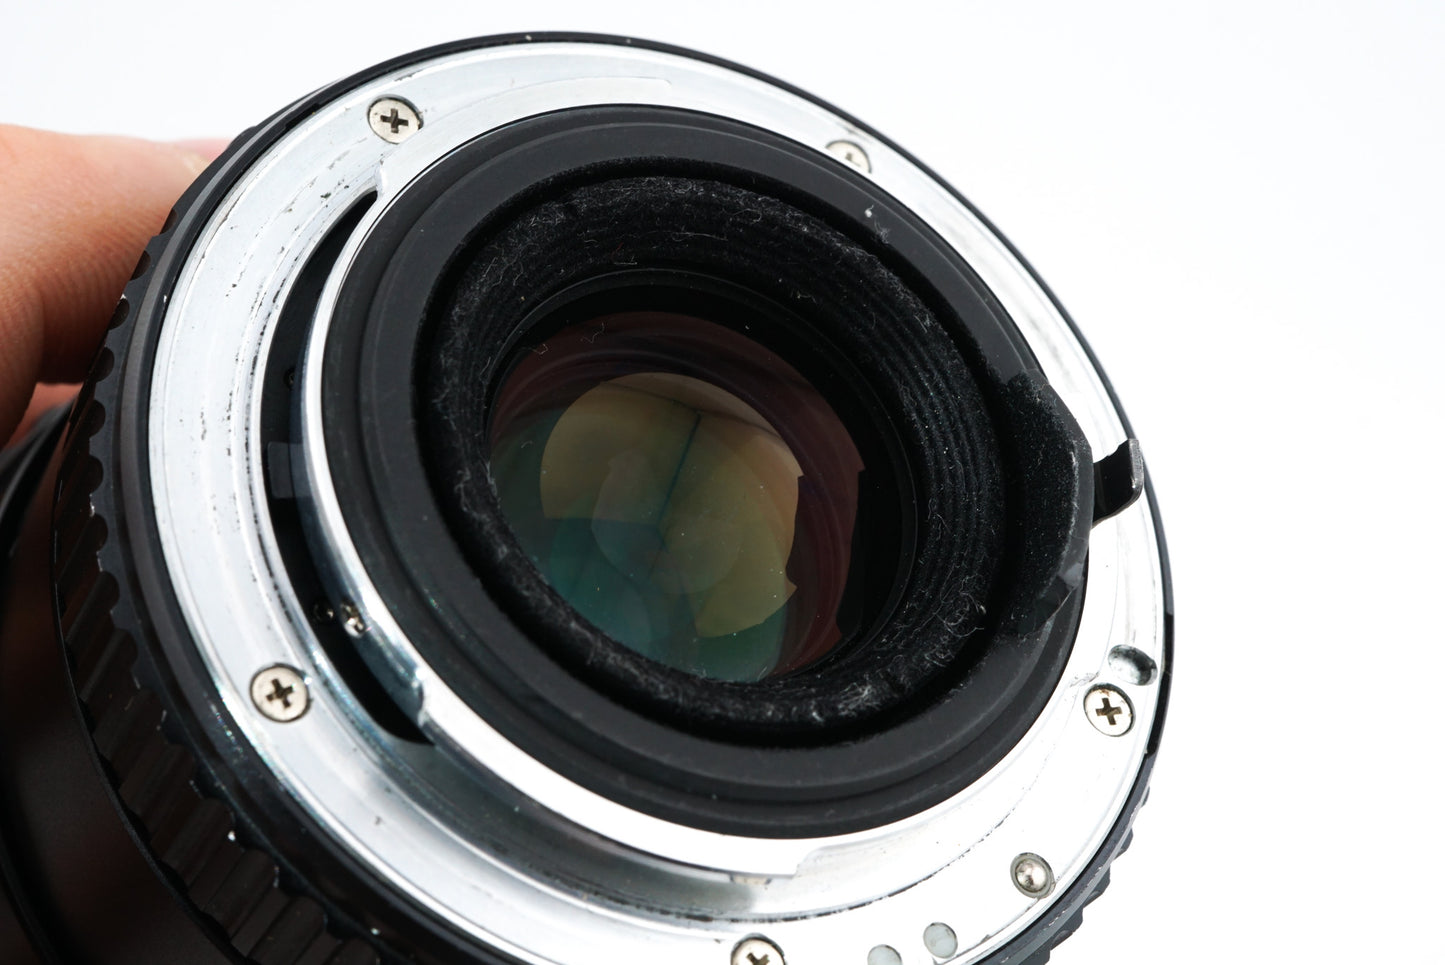 Pentax 35-210mm f3.5-4.5 SMC Pentax-A Zoom